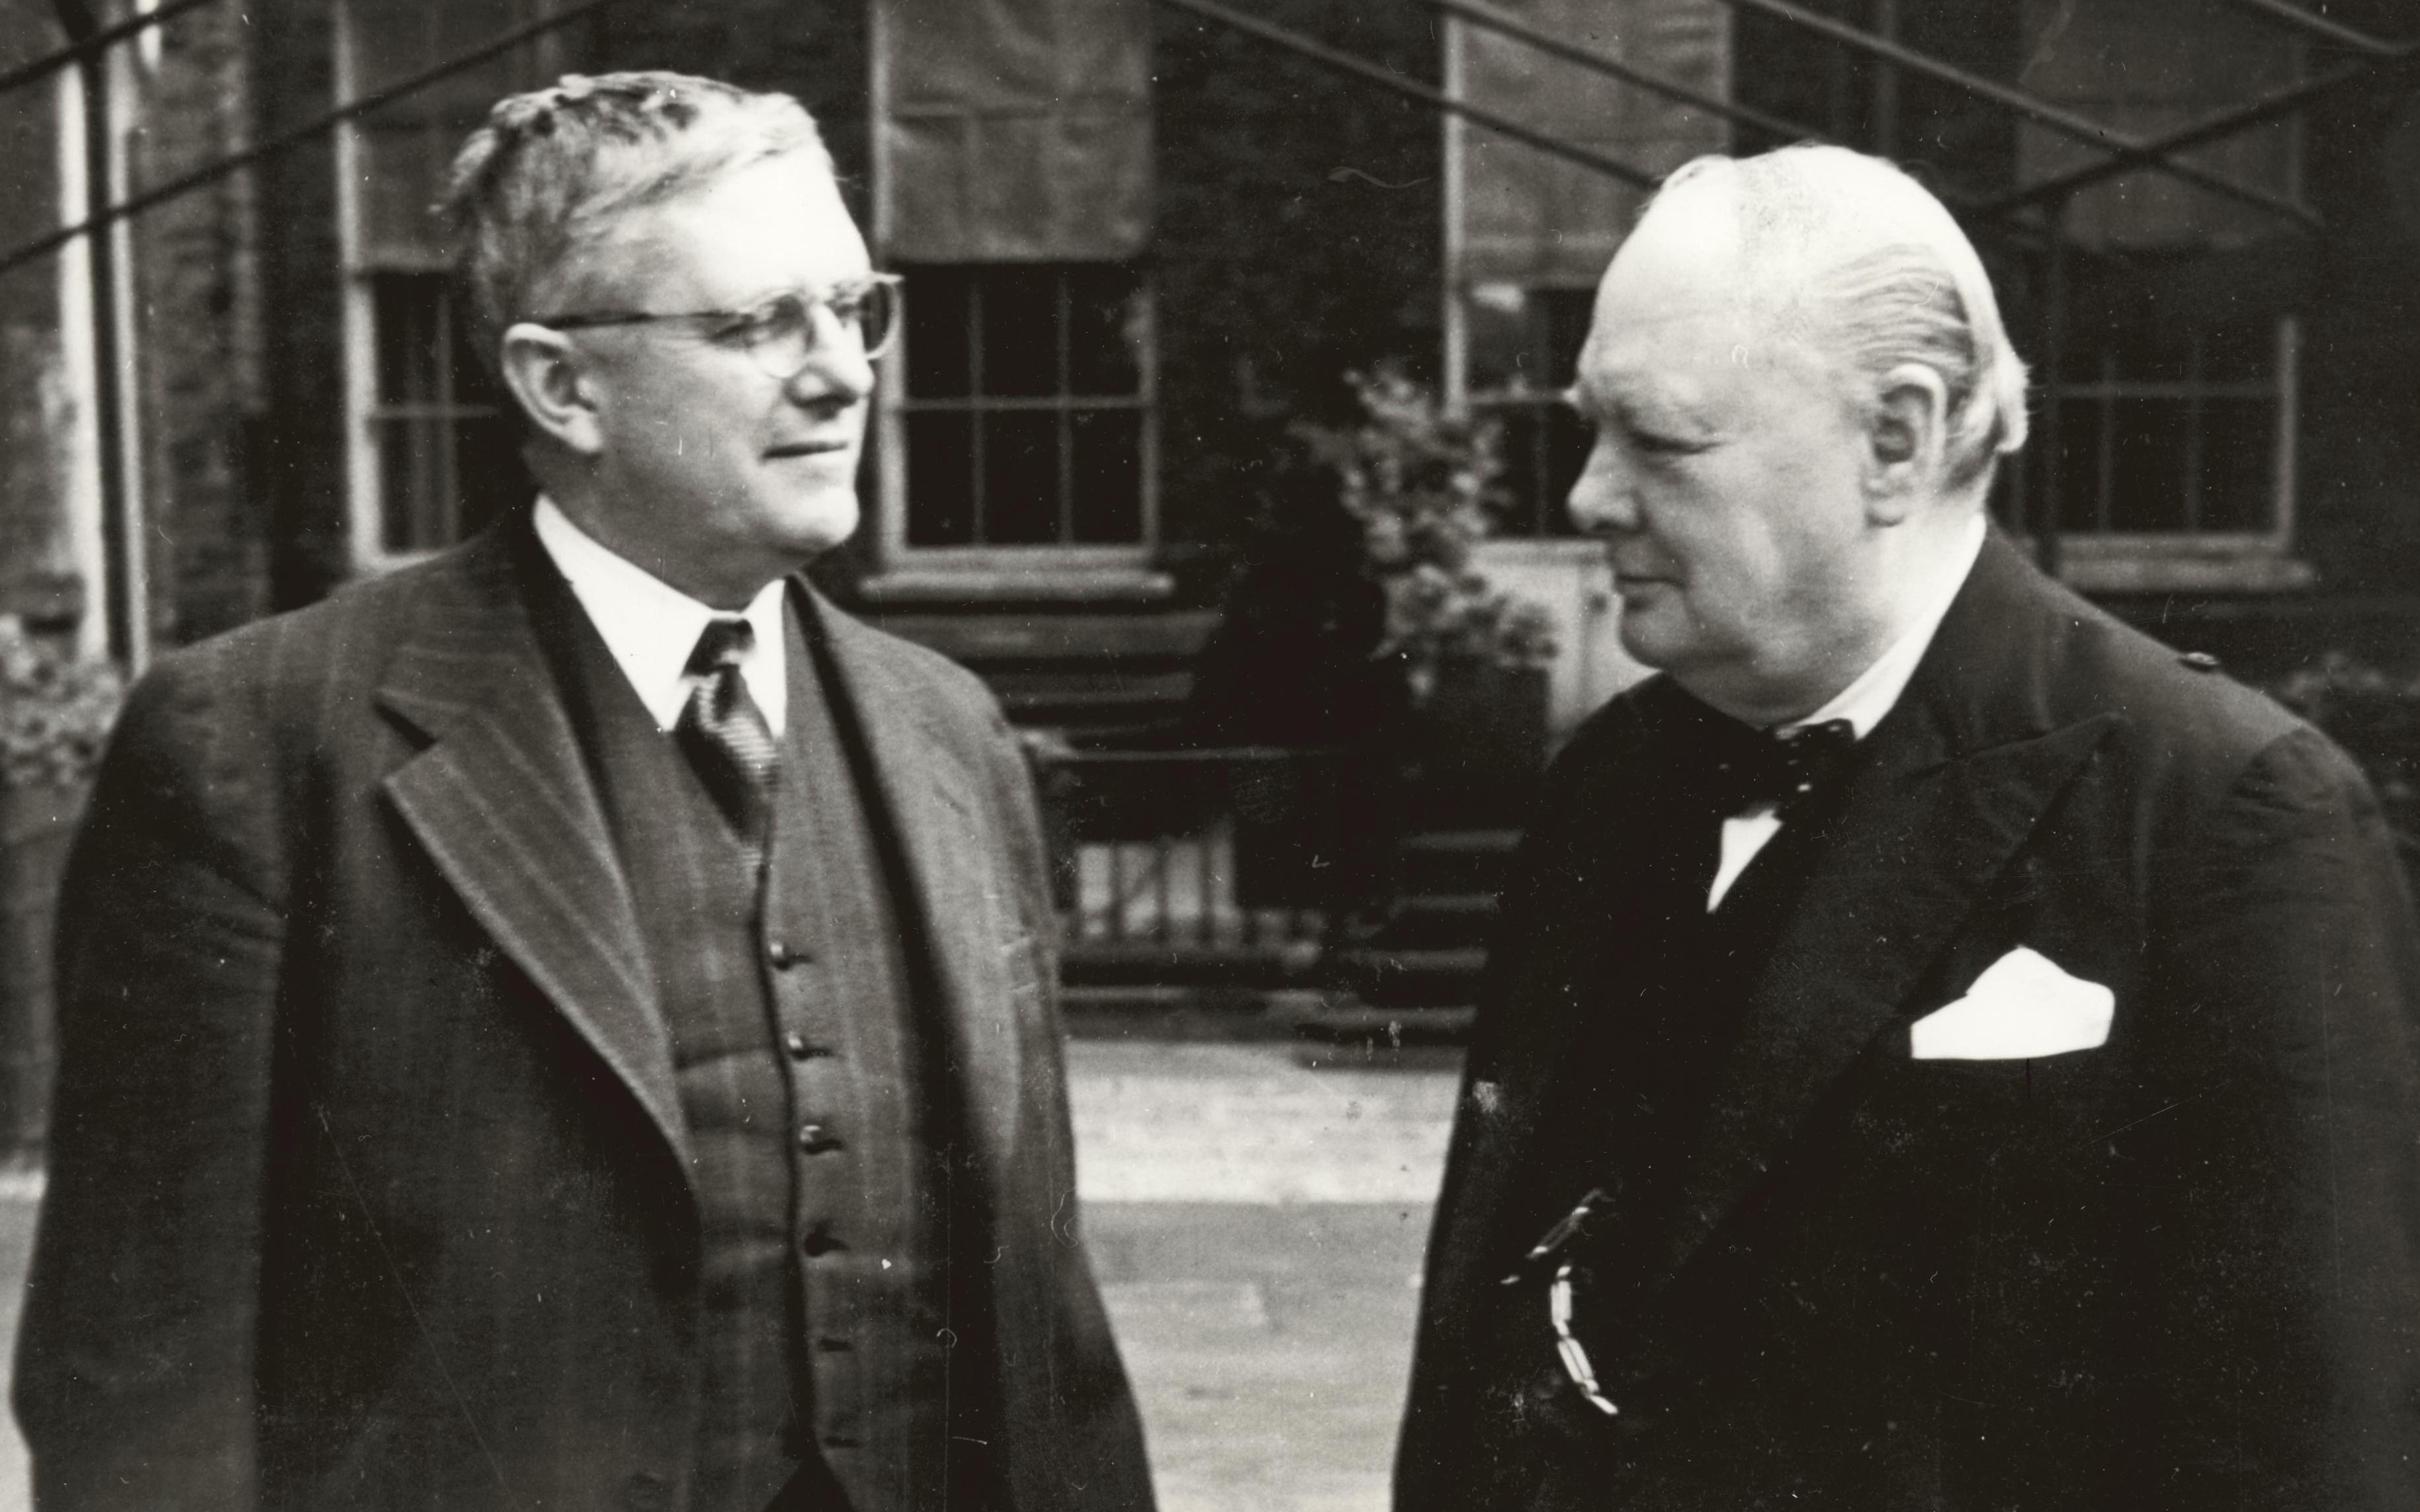 Australia’s Minister for External Affairs, Dr V.H. Evatt (left) with British Prime Minister Winston Churchill, London, 1942 or 1943.